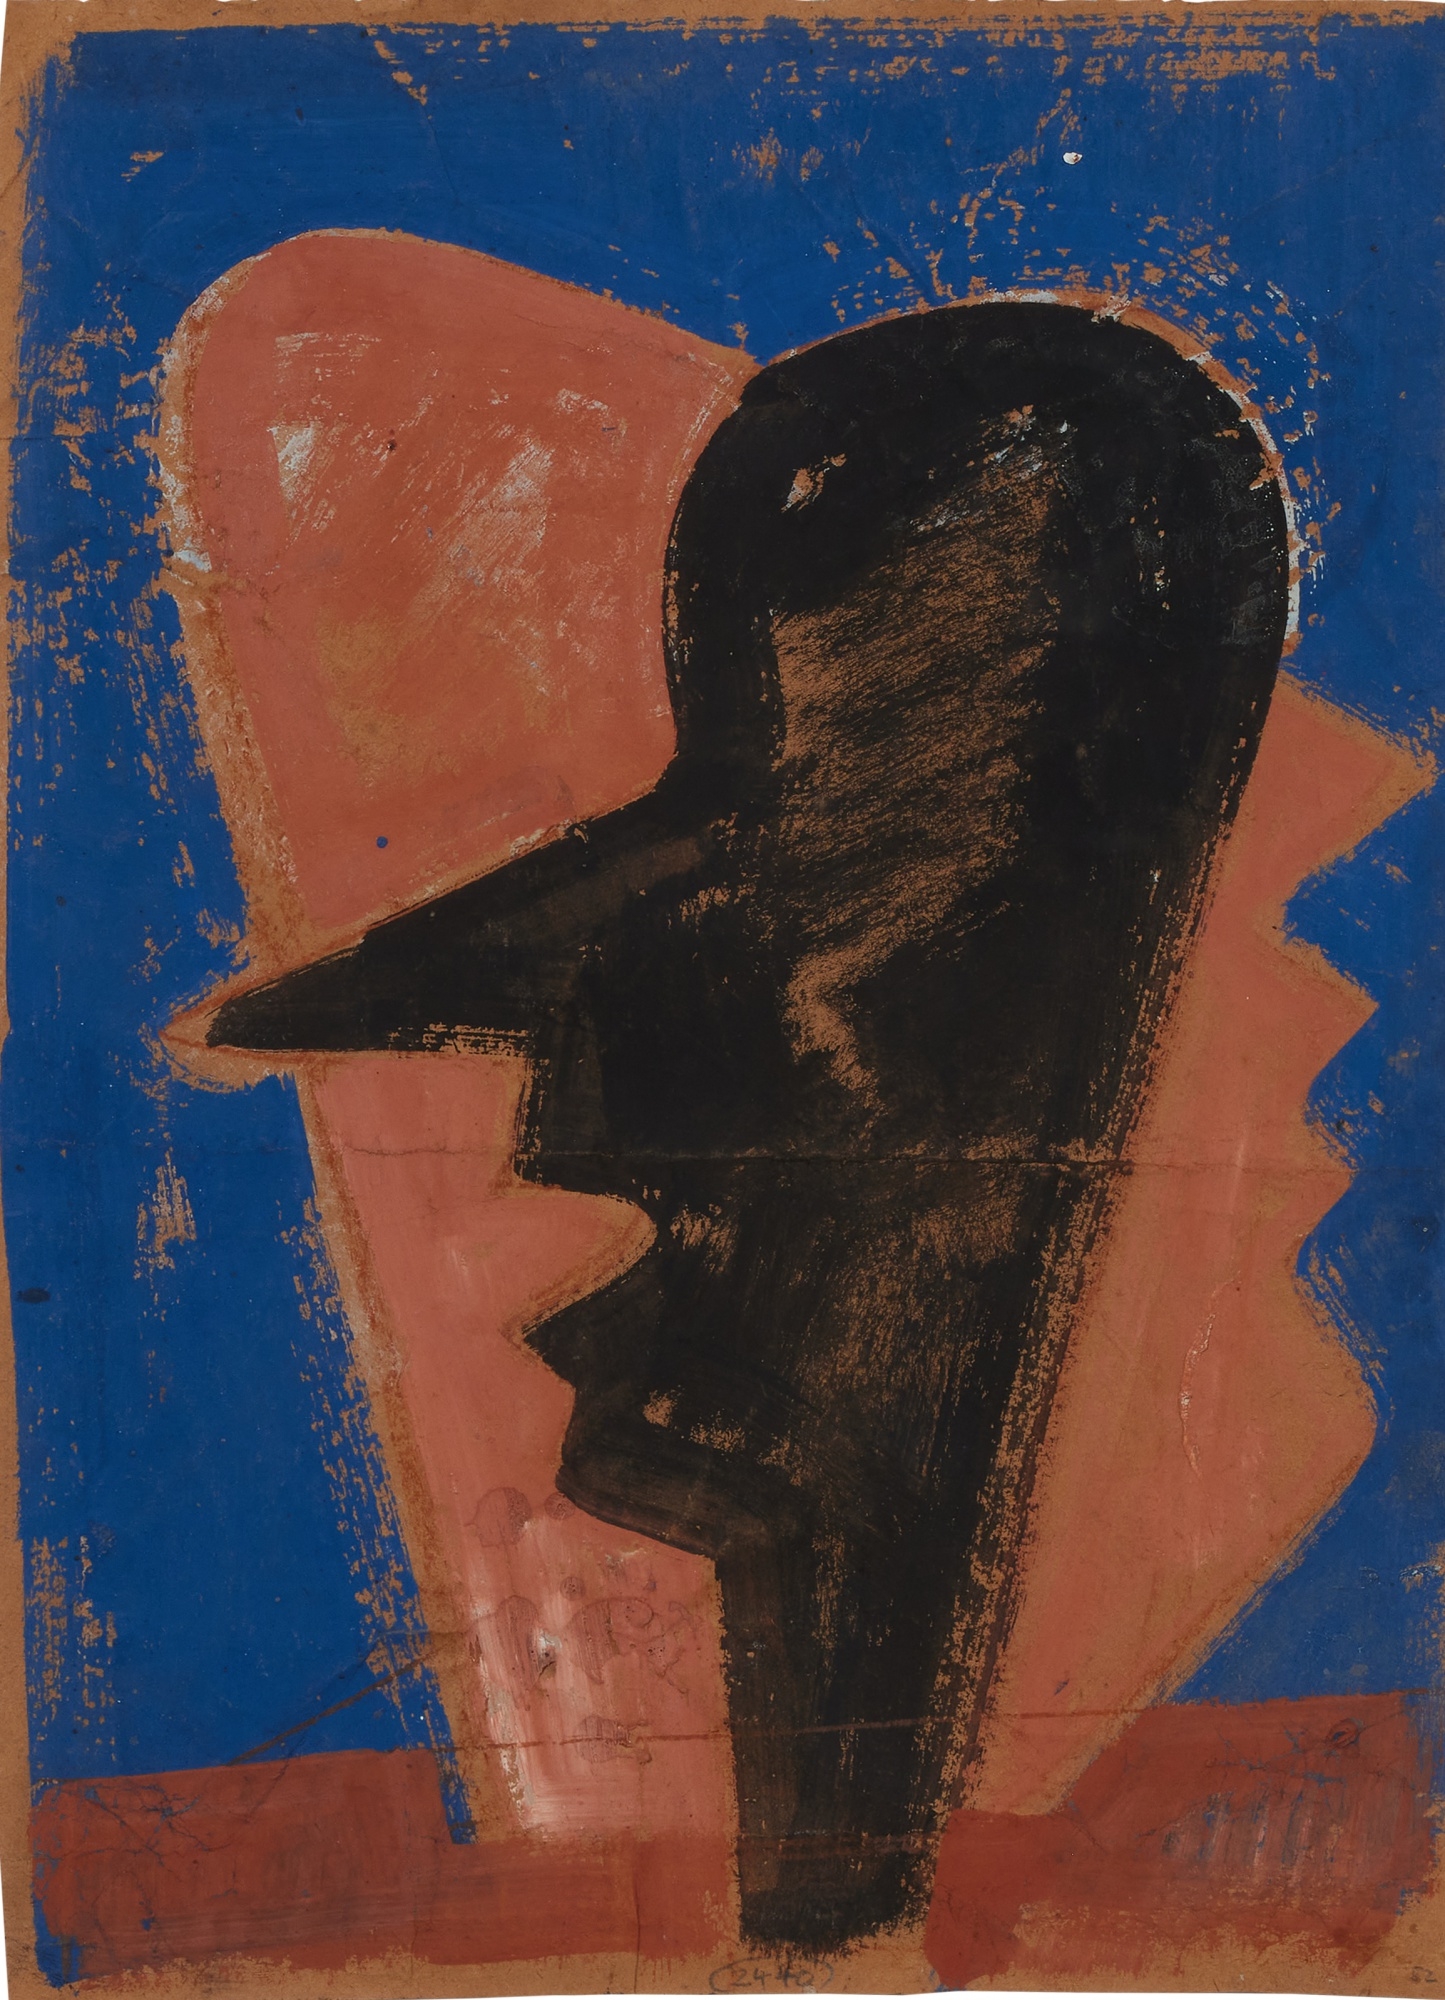 Artwork by Hermann Glöckner, Profile mit Farbflecken & Profile Schwarz & Profile vor blauem Grund, Made of tempera on paper